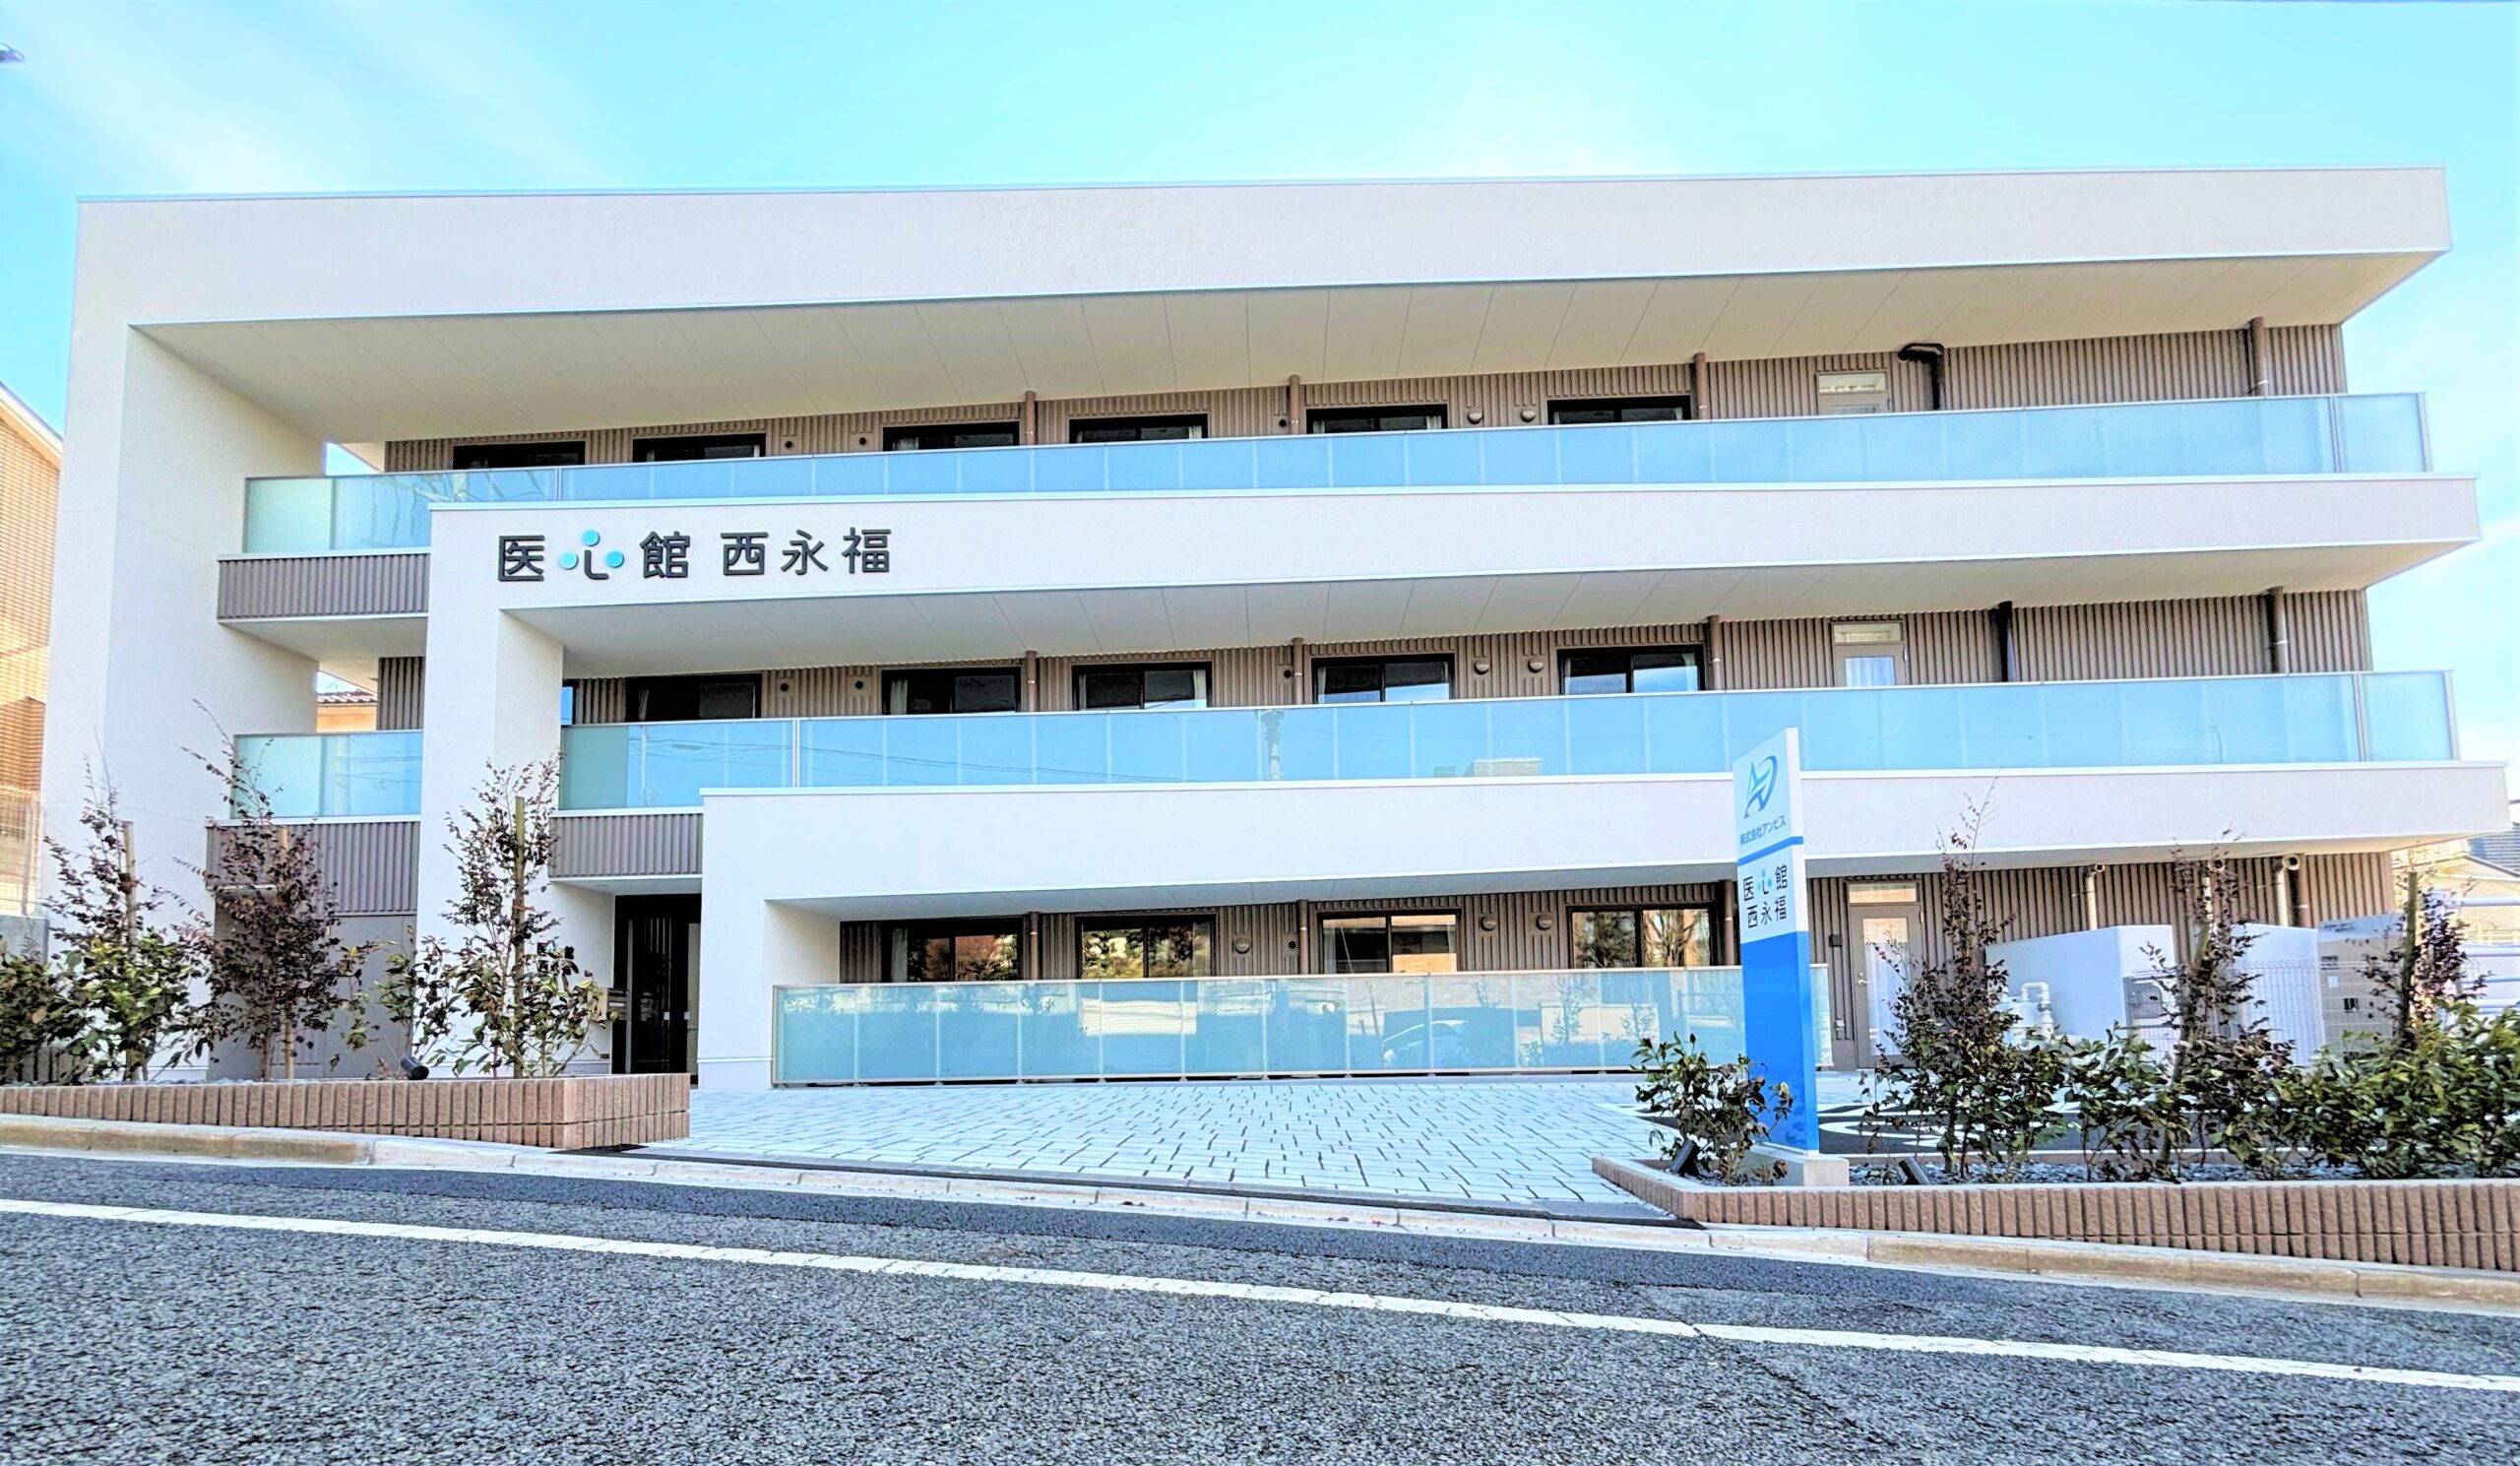 東京都では10施設目となる 有料老人ホーム「医心館 西永福」をオープンしました